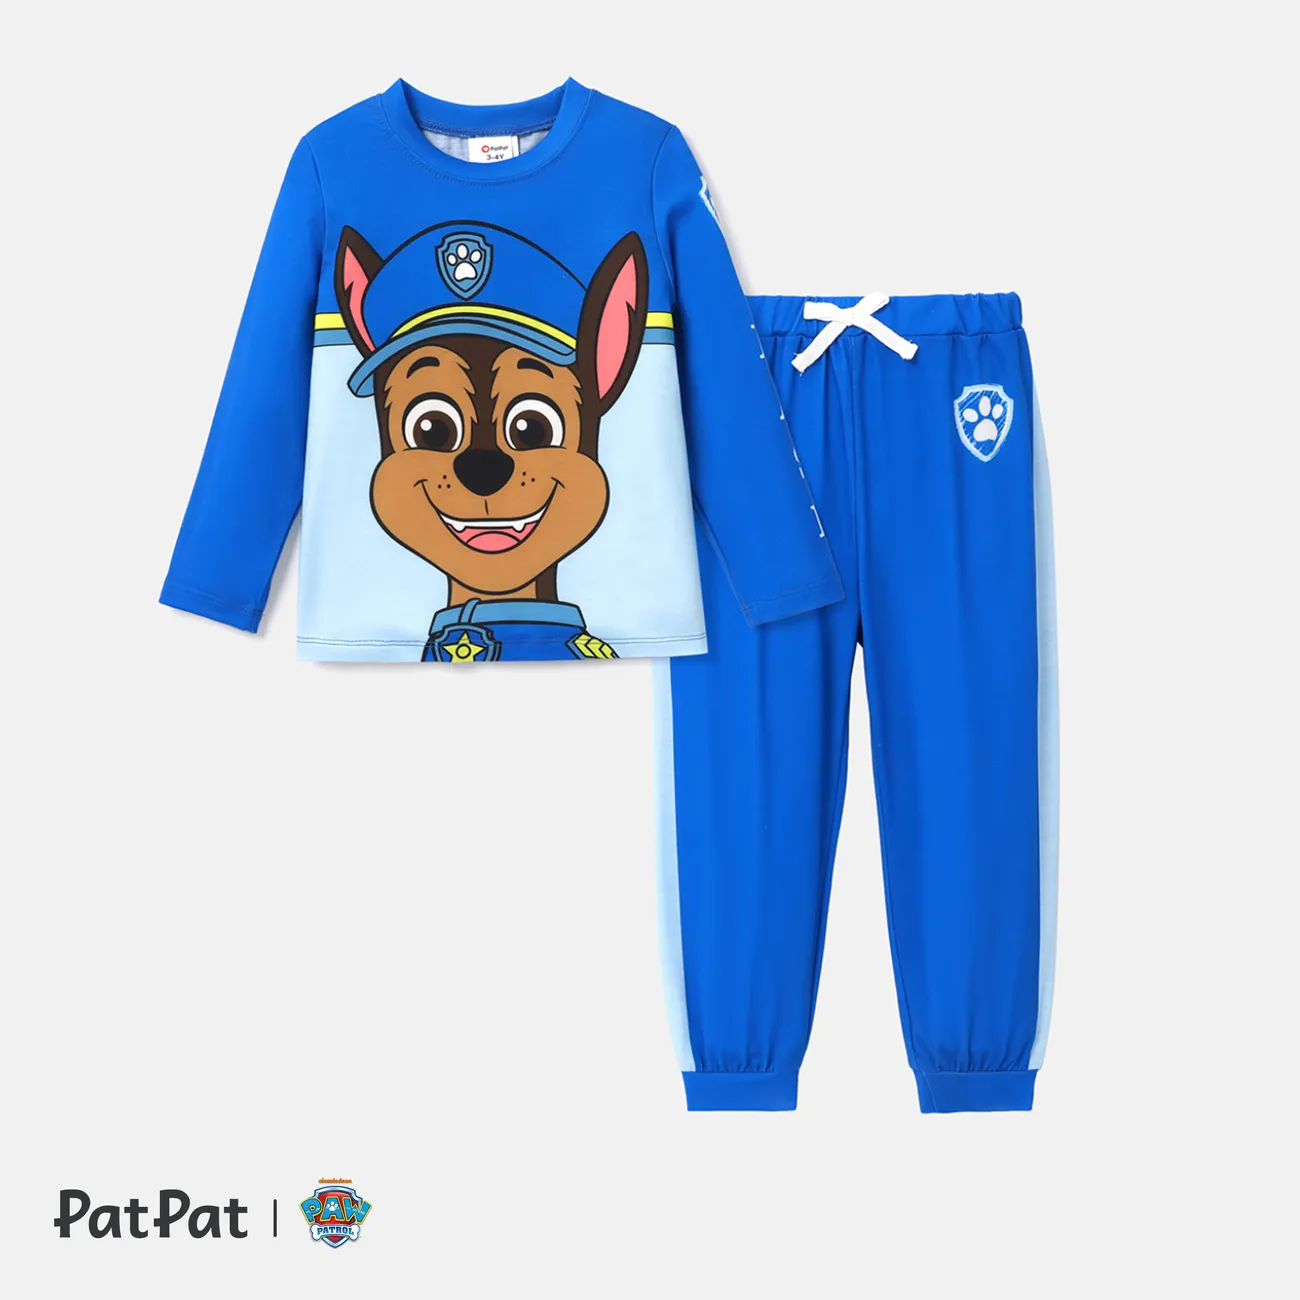 PAW Patrol Toddler Boy/Girl 2-Piece Cartoon Print Top and Pants Set Blue big image 1